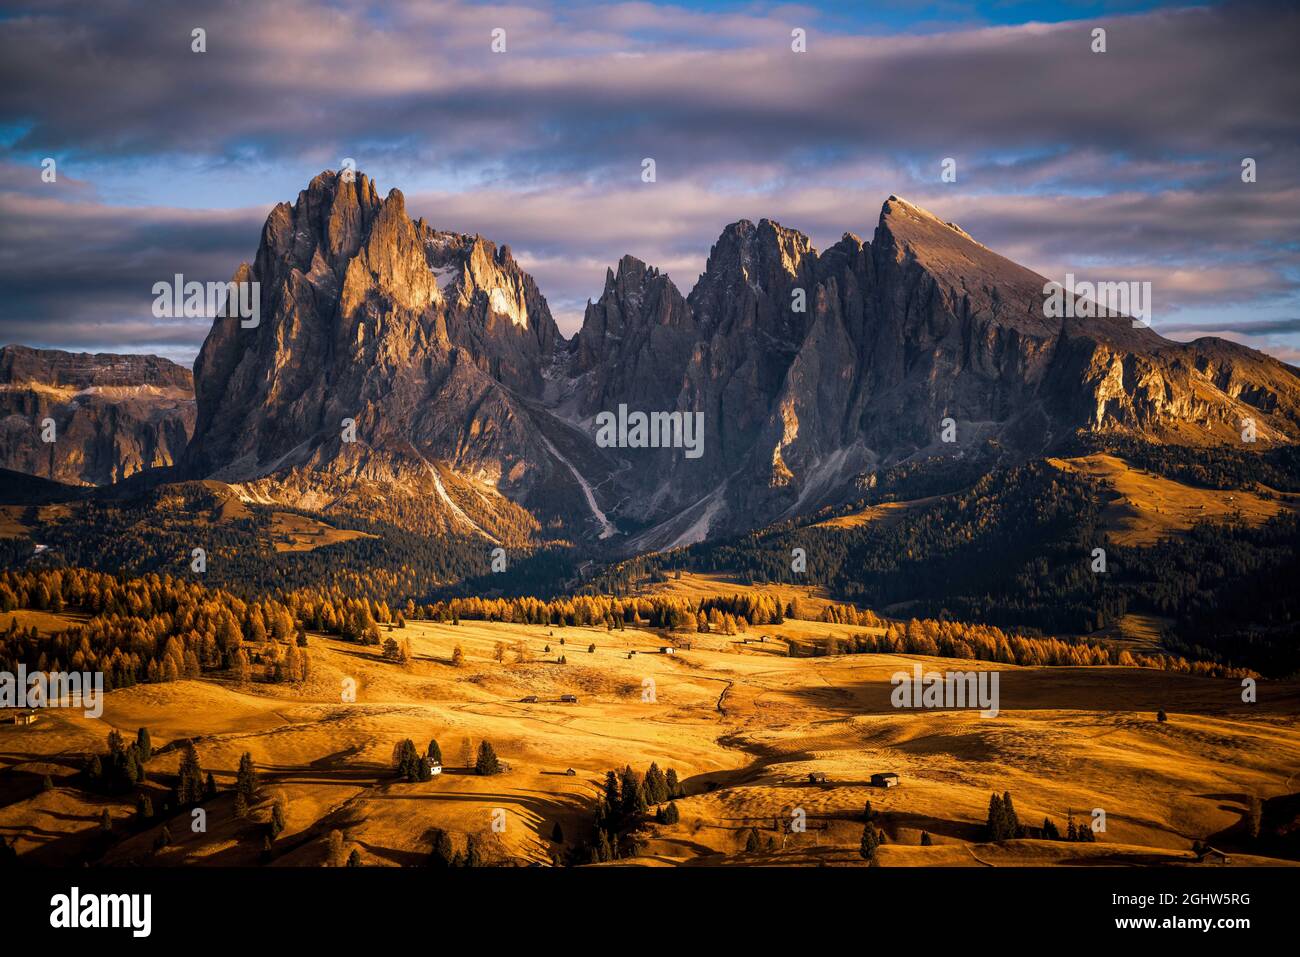 Sassolungo mountain range above Alpe di Siusi plateau, Val Gardena, South Tyrol, Italy Stock Photo